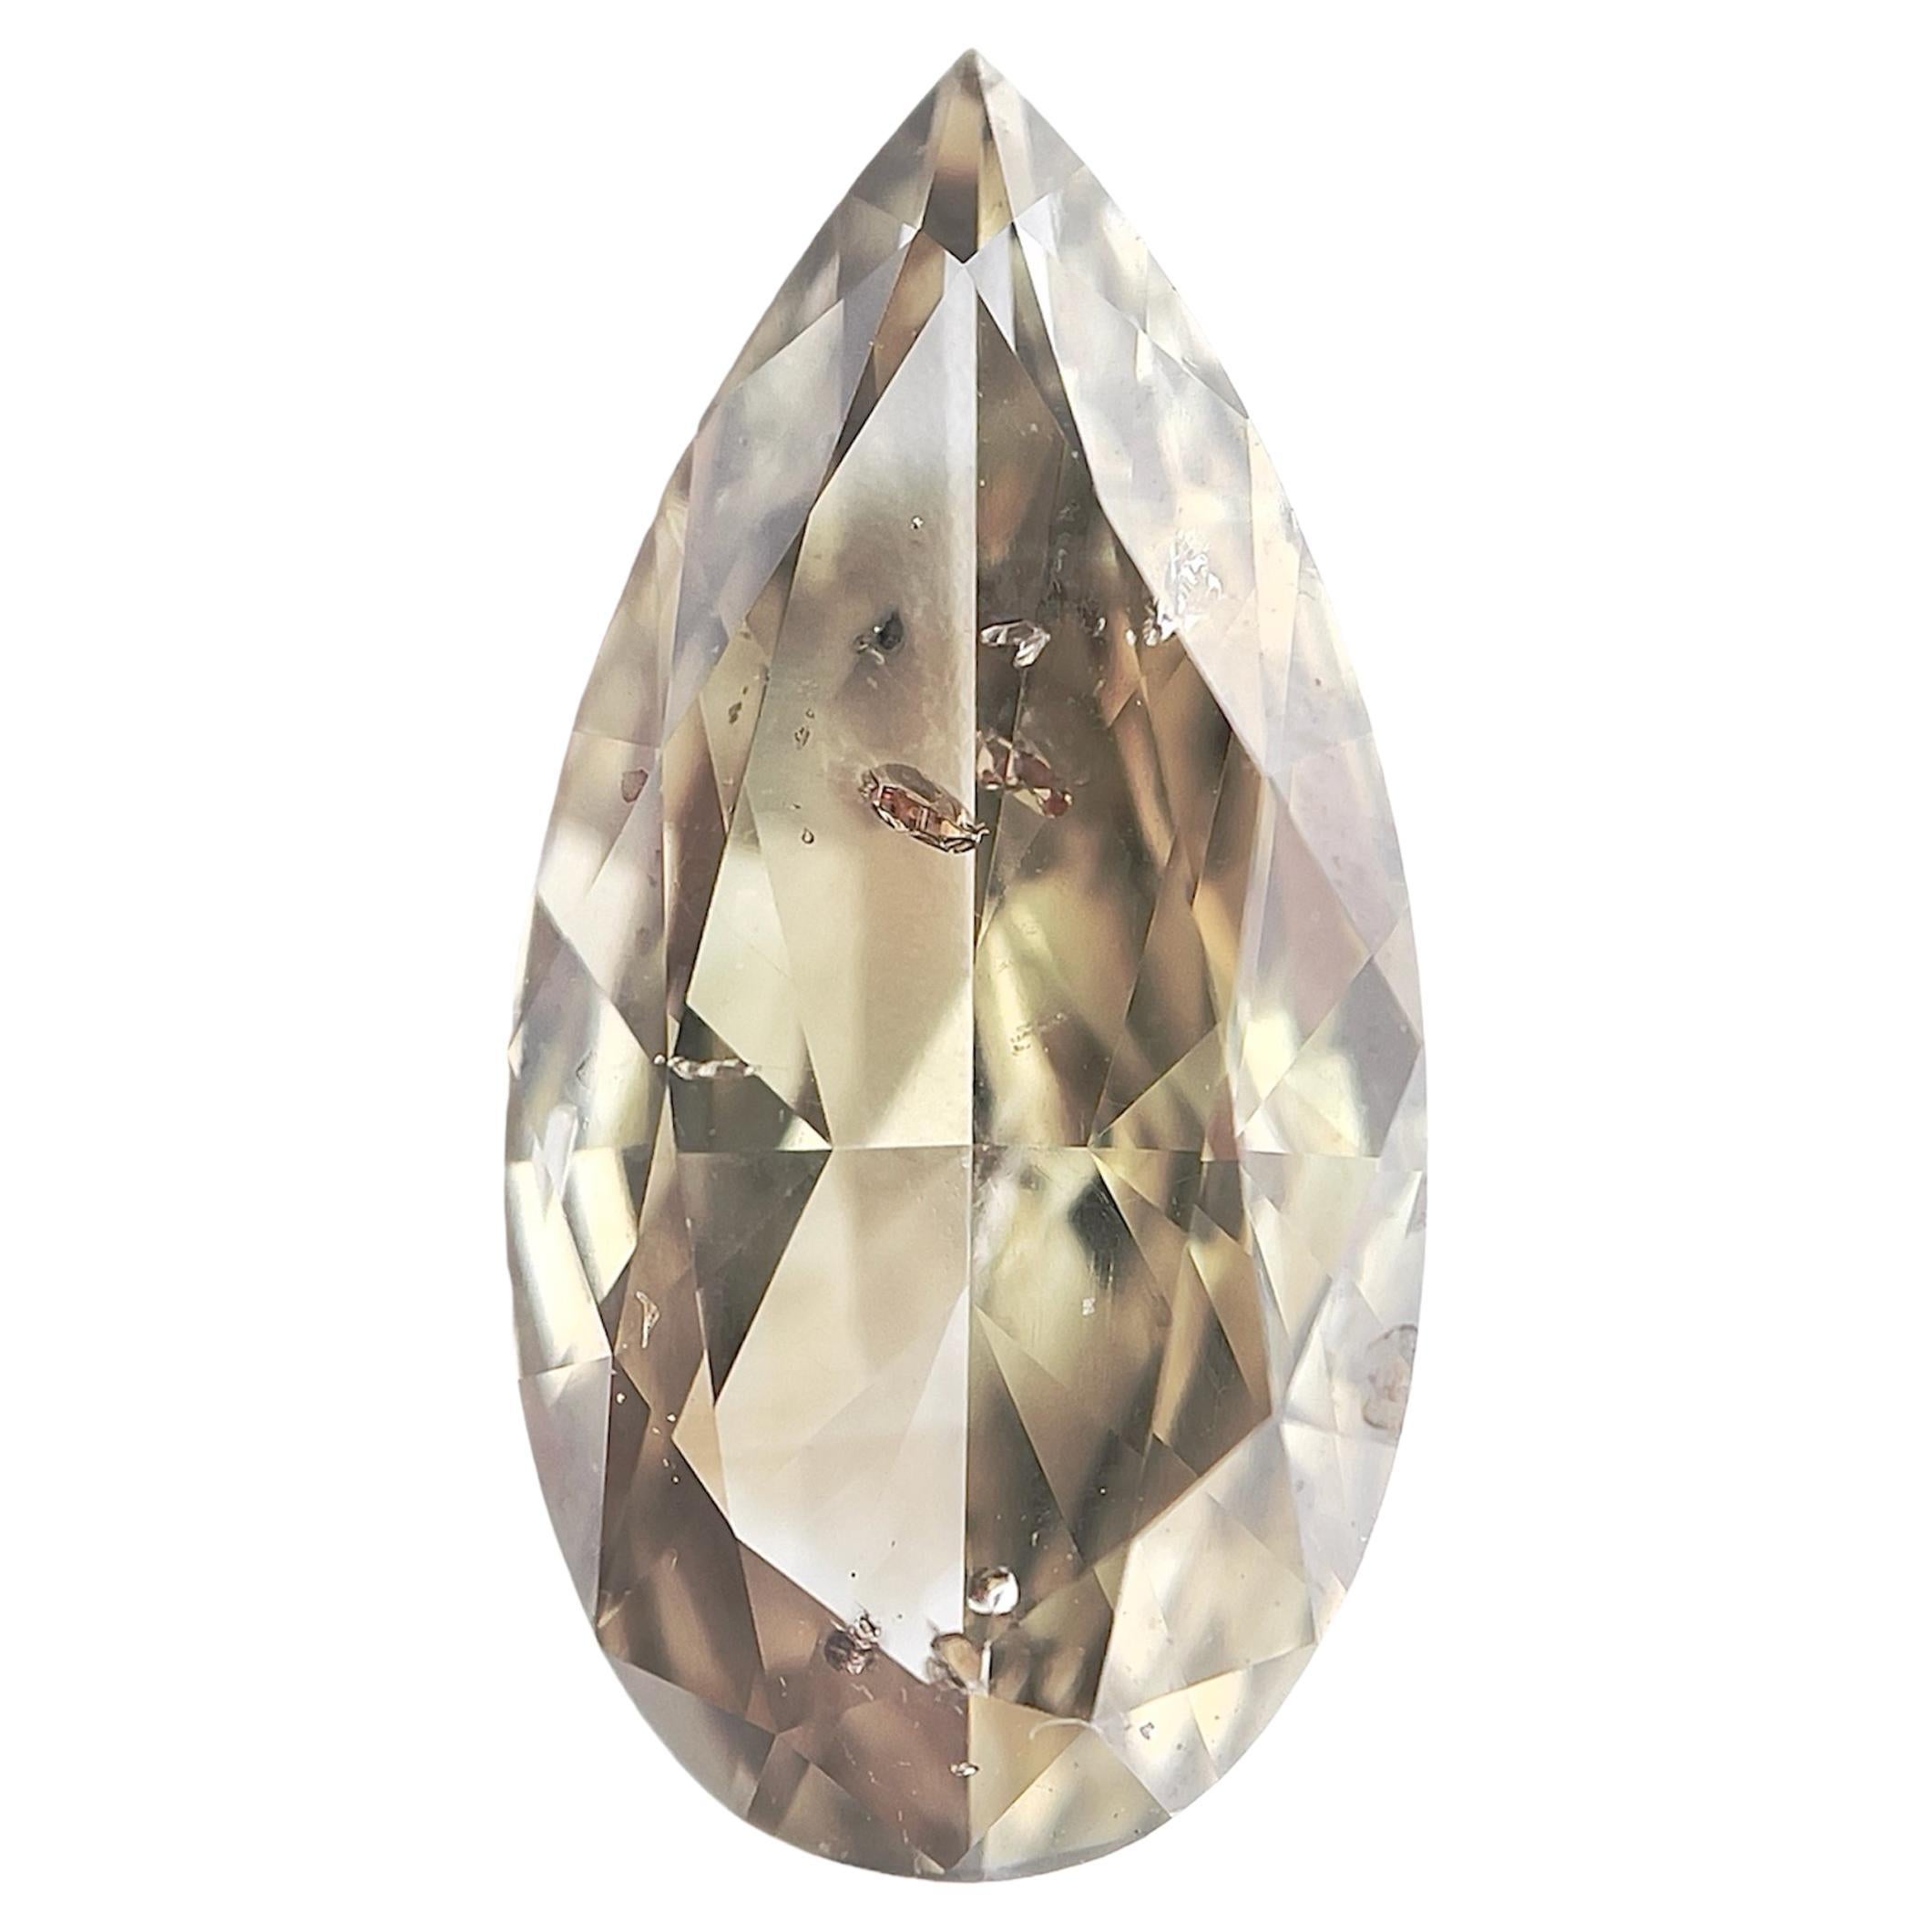 Diamant naturel certifié GIA de 2,69 carats en forme de poire modifié Brilliante caméléon I1